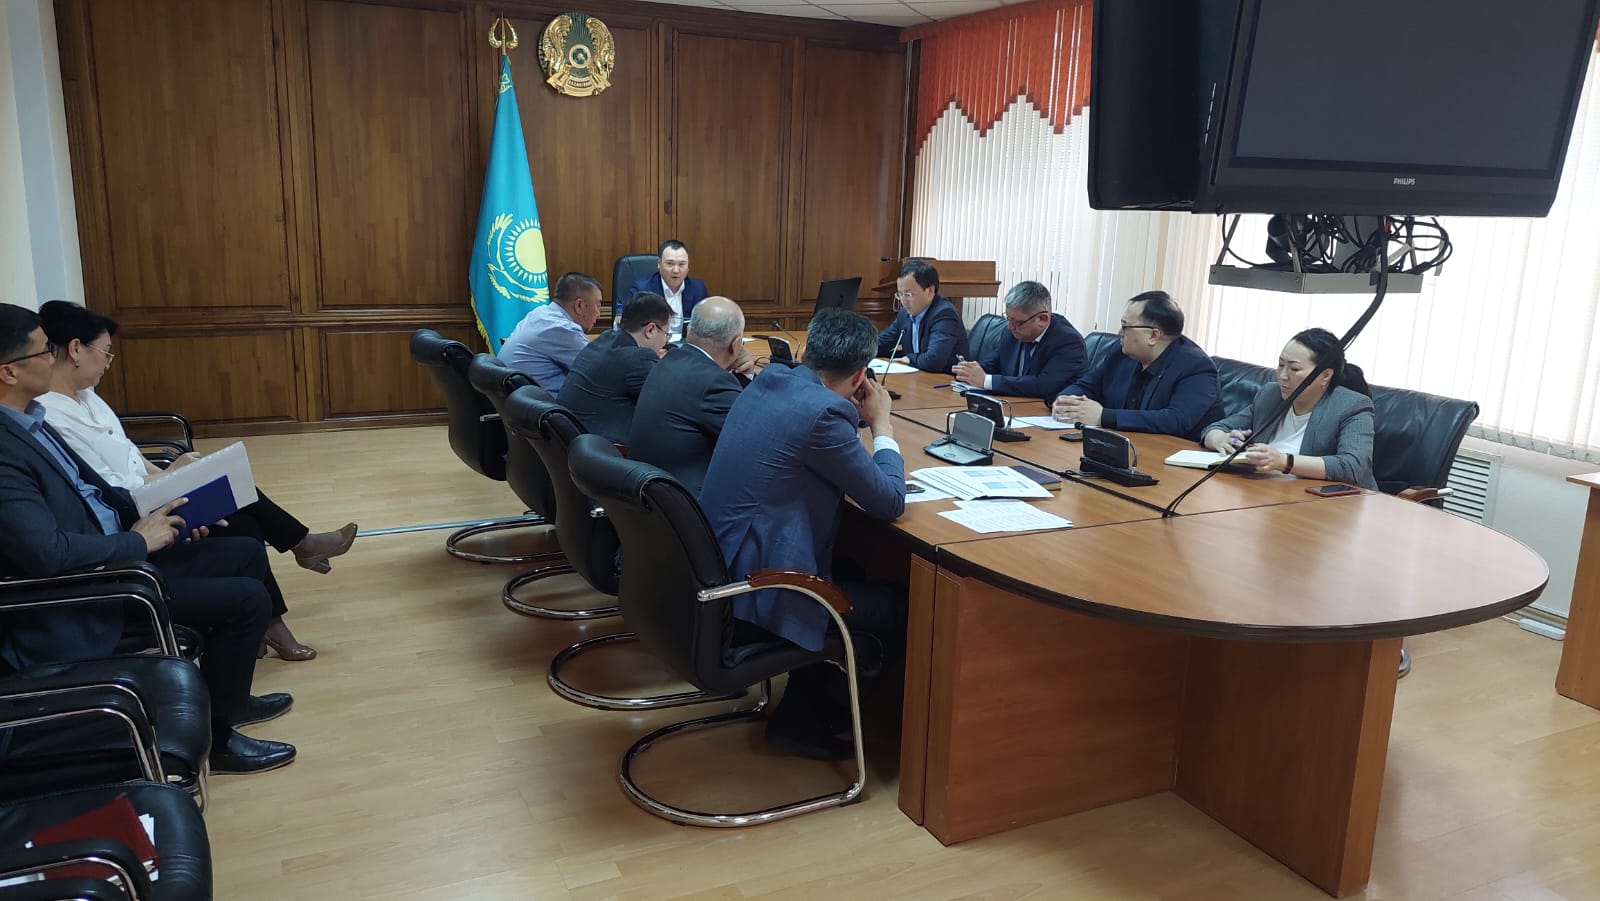 Состоялось заседание комиссии по расследованию посреднических схем по всей цепочке ценообразования на продовольственные товары по Актюбинской области